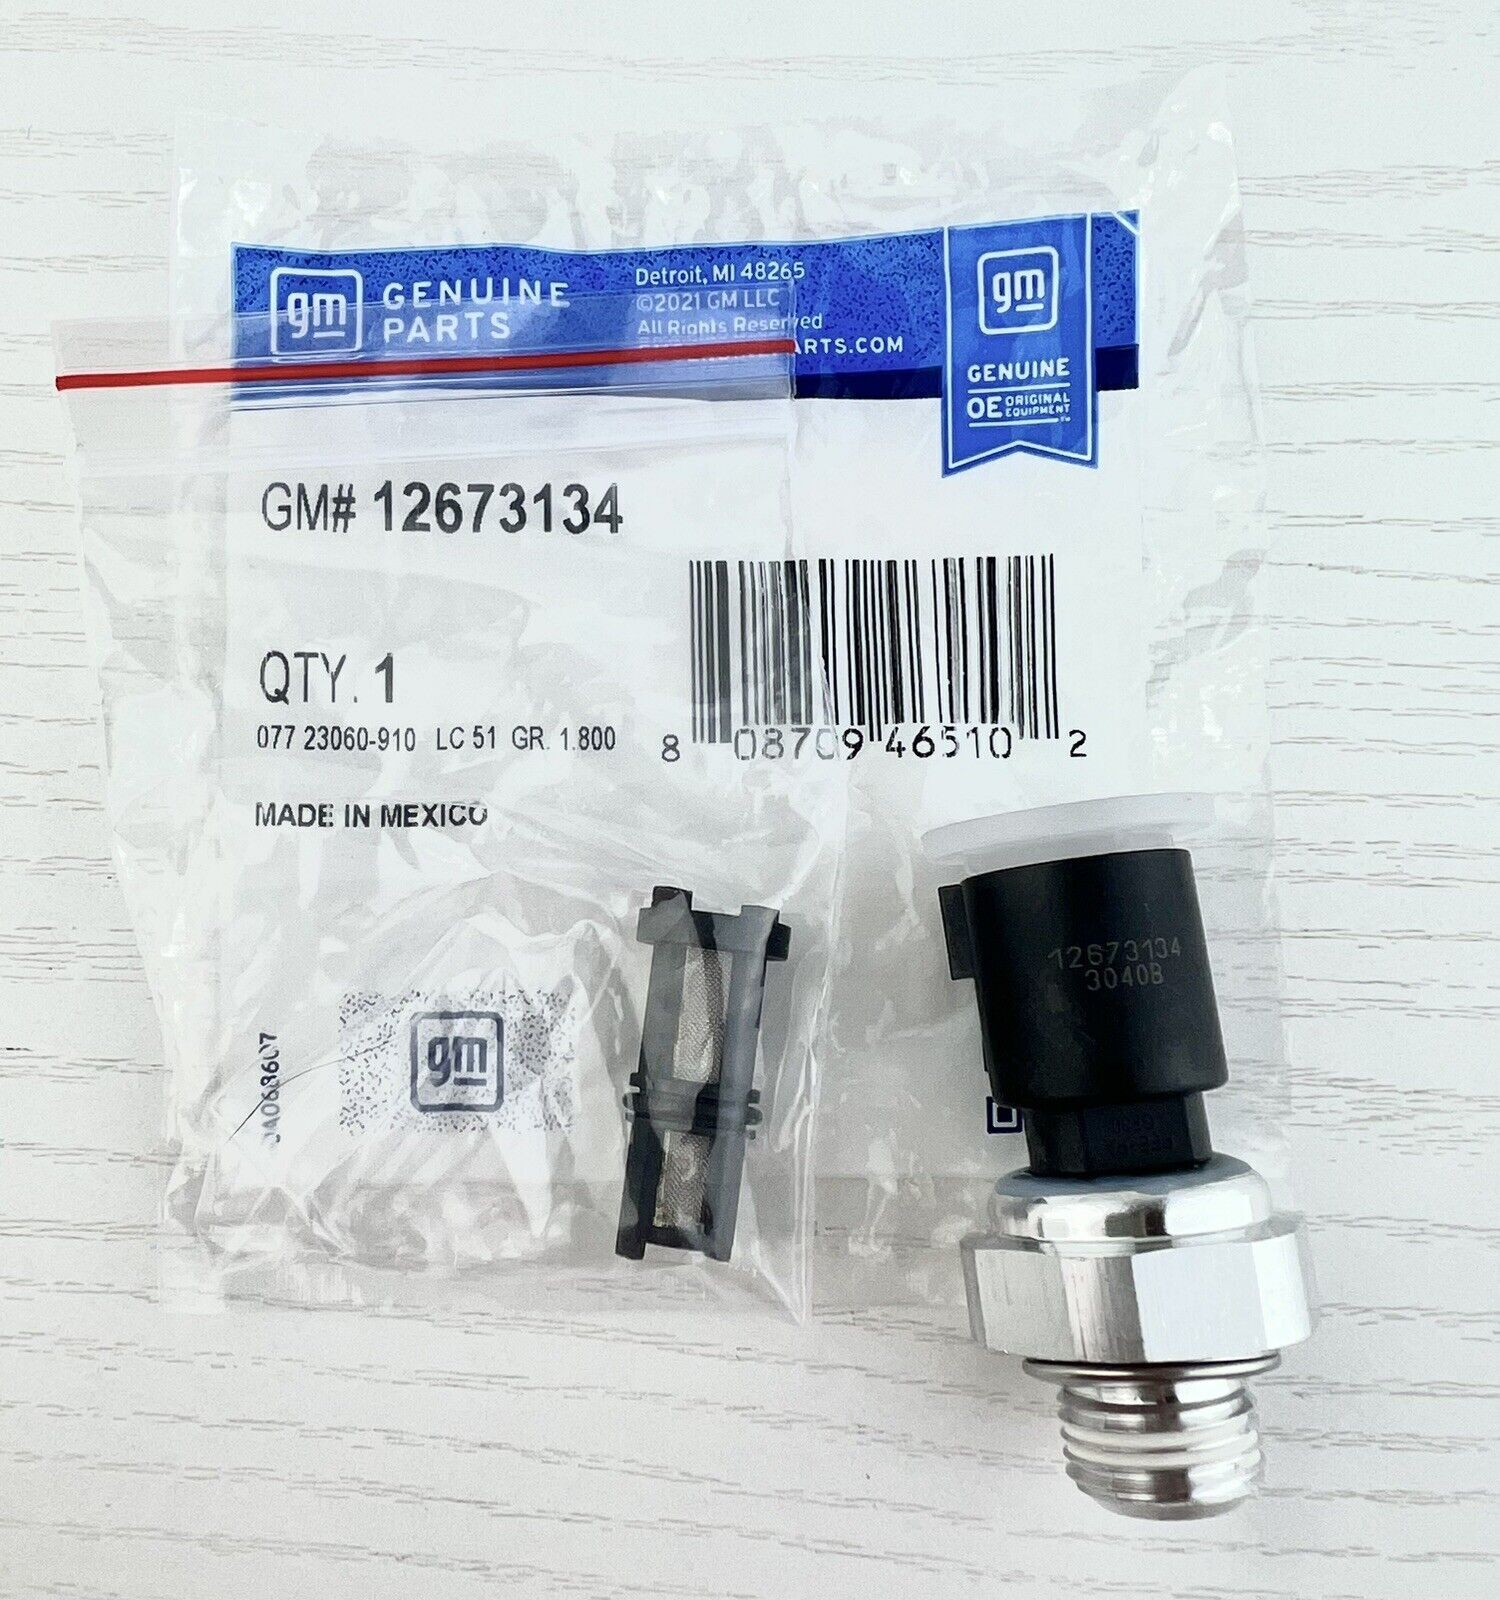 GM Engine Oil Pressure Sensor #12673134 With Filter #12585328 / #917-143